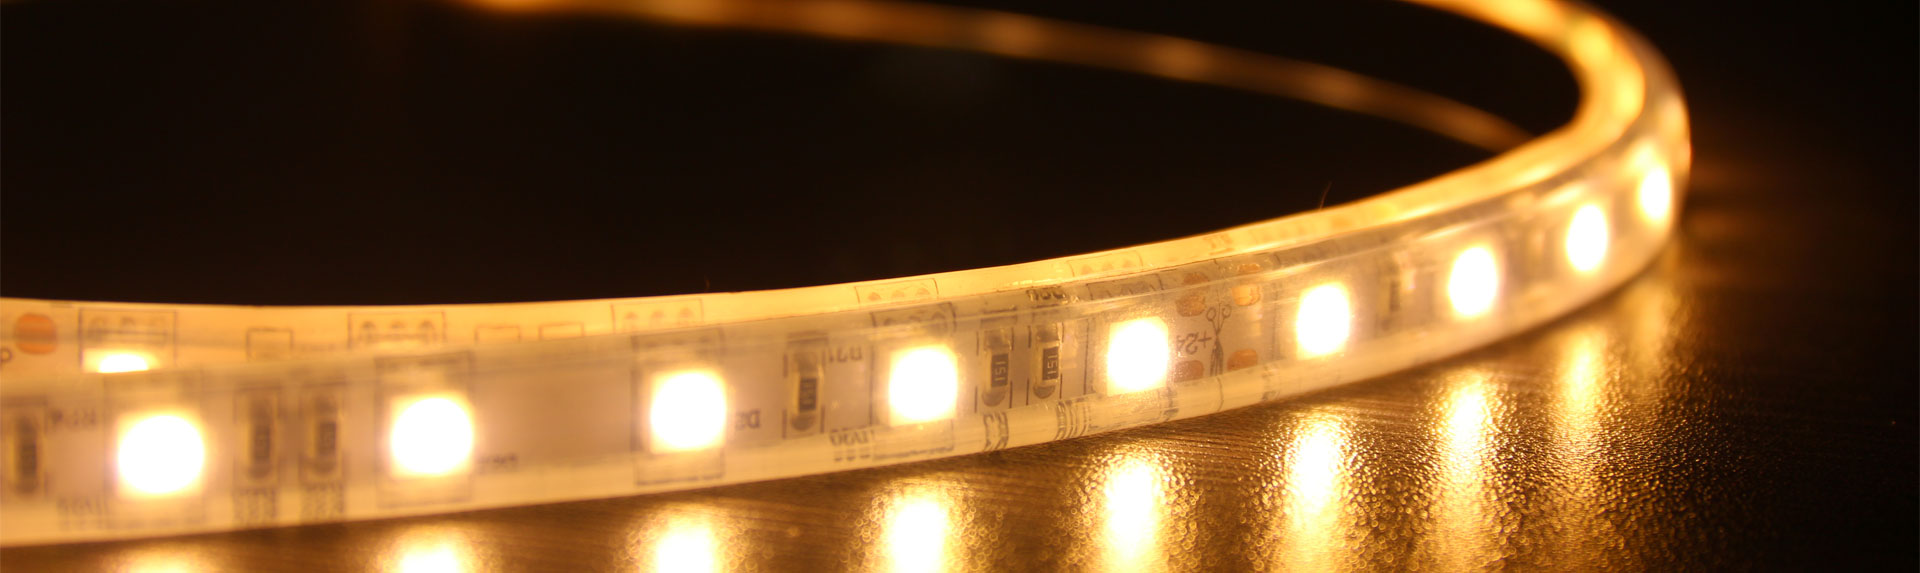 IP68 wasserdichte LED-Lichtleisten - LUGISK Strip